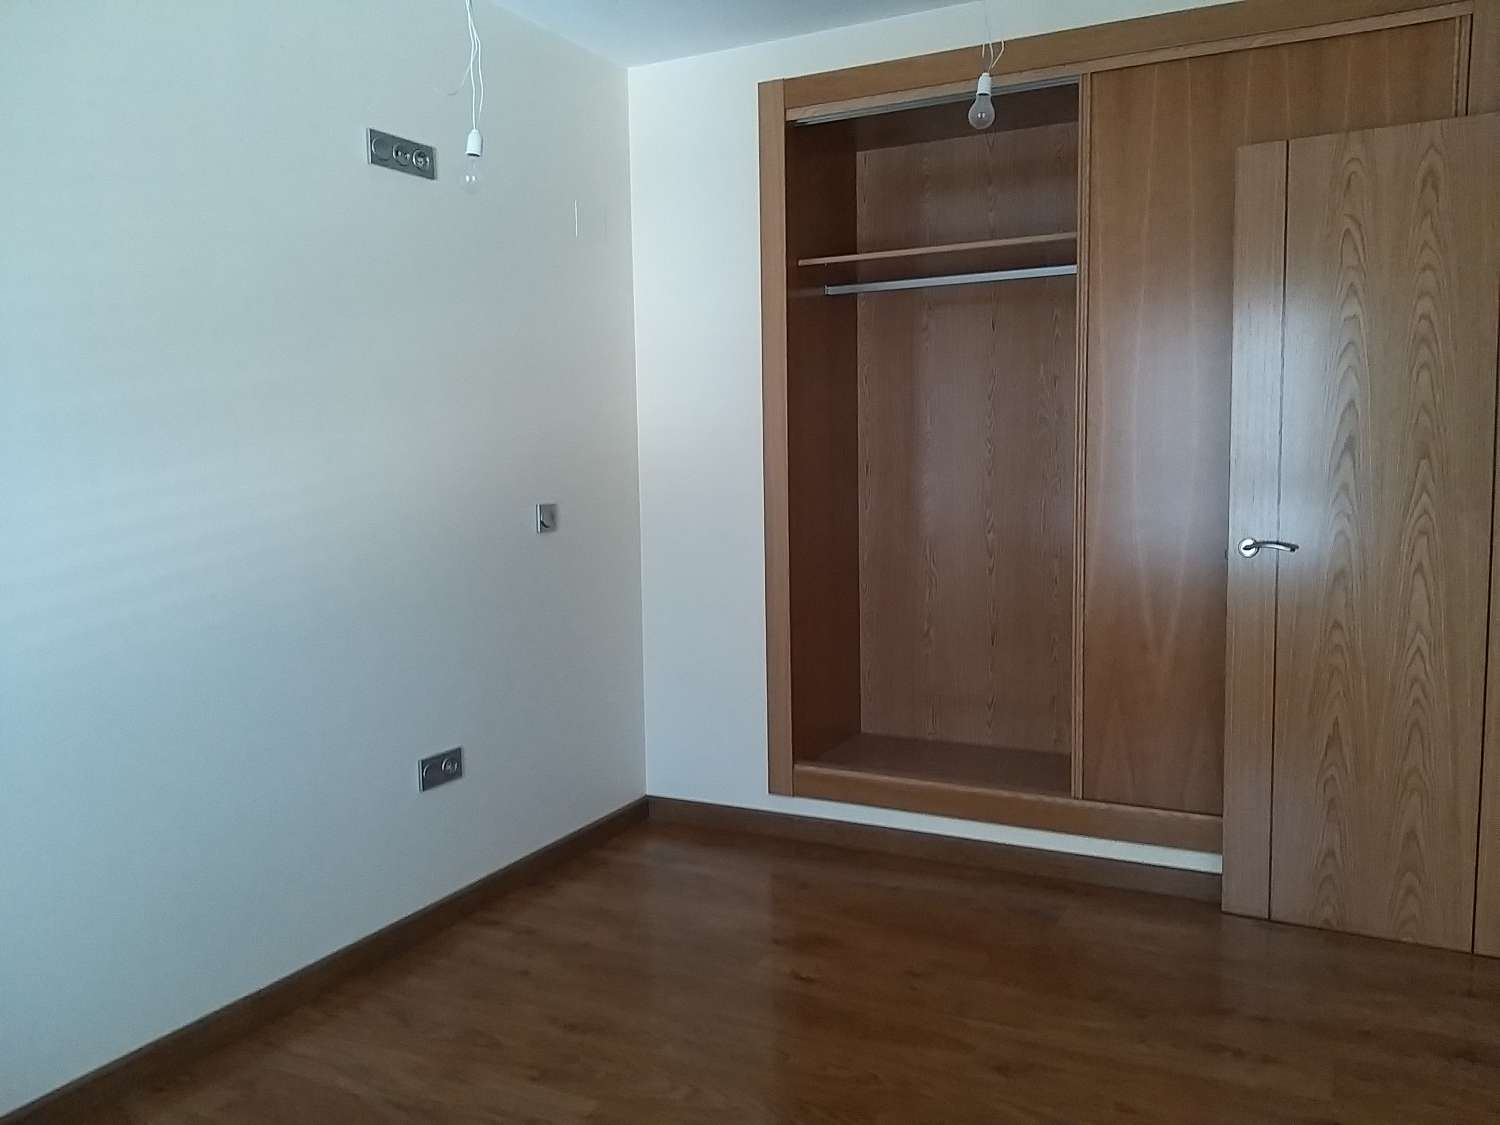 Apartment 3 bedrooms, 2 bathrooms, in Altea (Alicante)